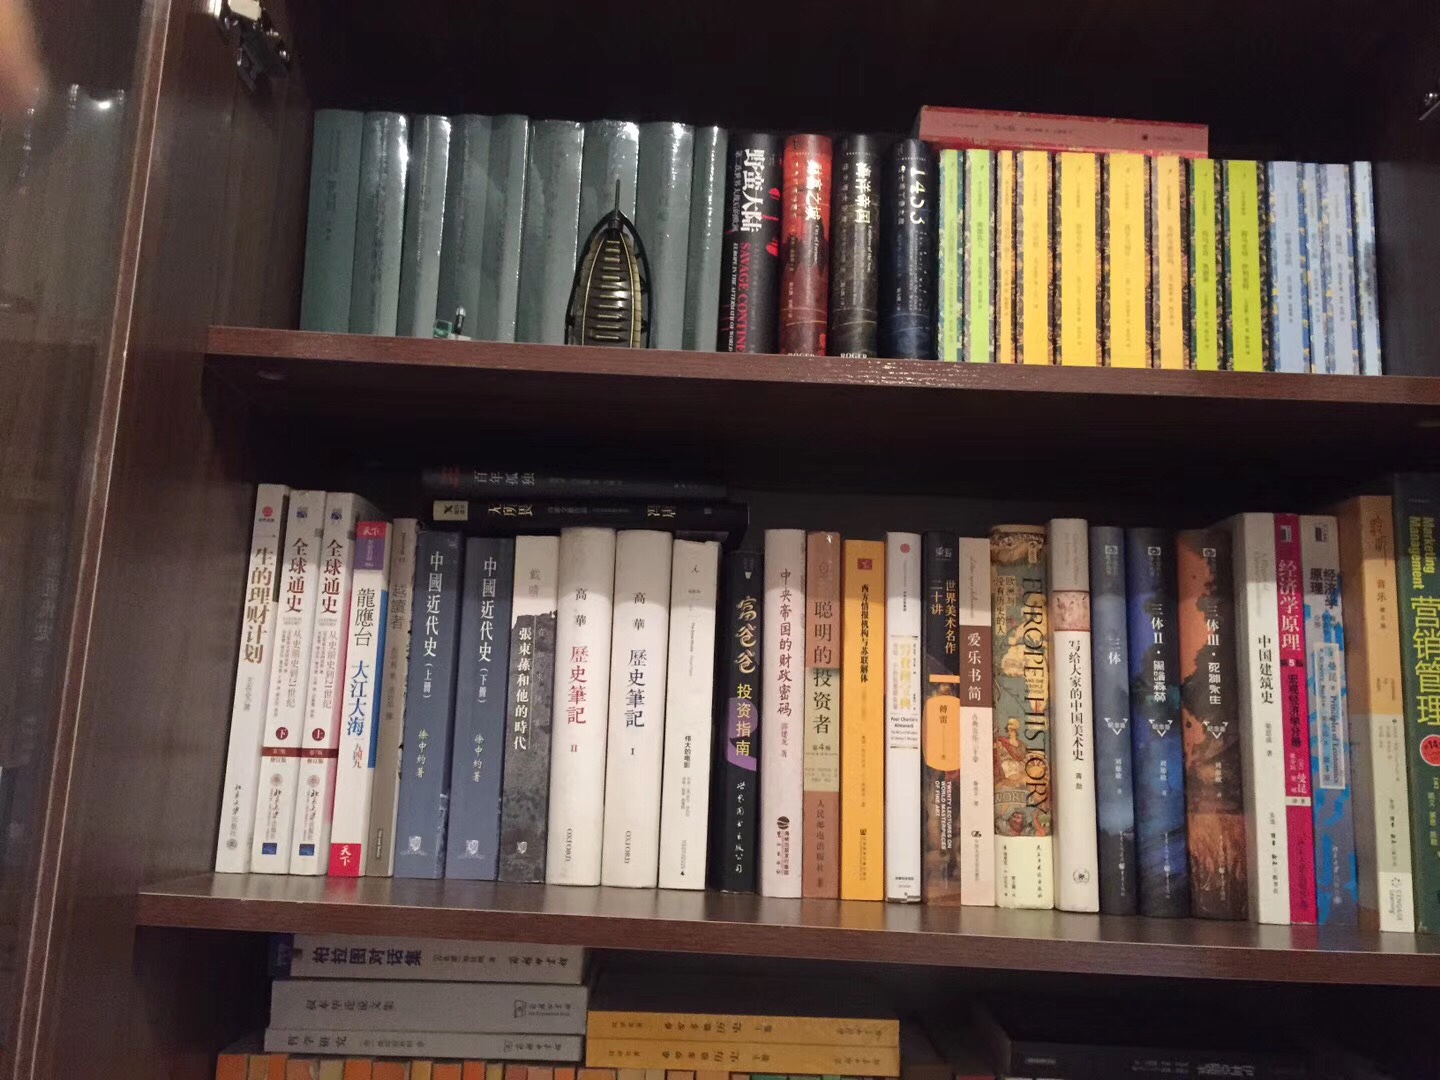 商务印书馆的汉译世界学术名著，为最全最经典的学术名著，有多少买多少，家里藏了100多本了。